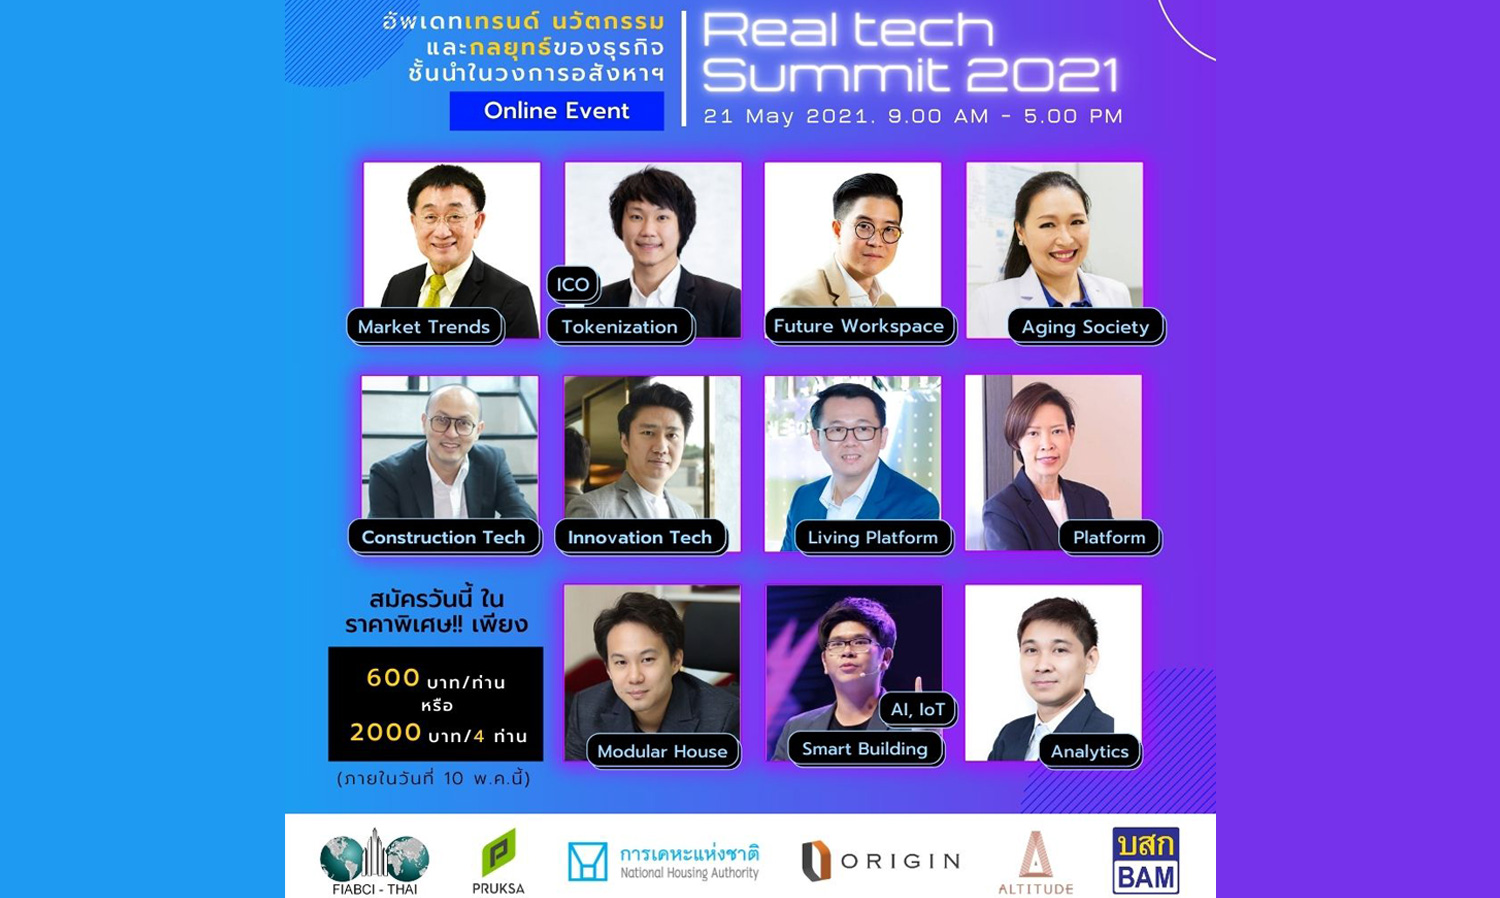 อัพเดทเทรนด์ นวัตกรรมอสังหาริมทรัพย์ ในงาน Real Tech Summit 2021: Online Event!